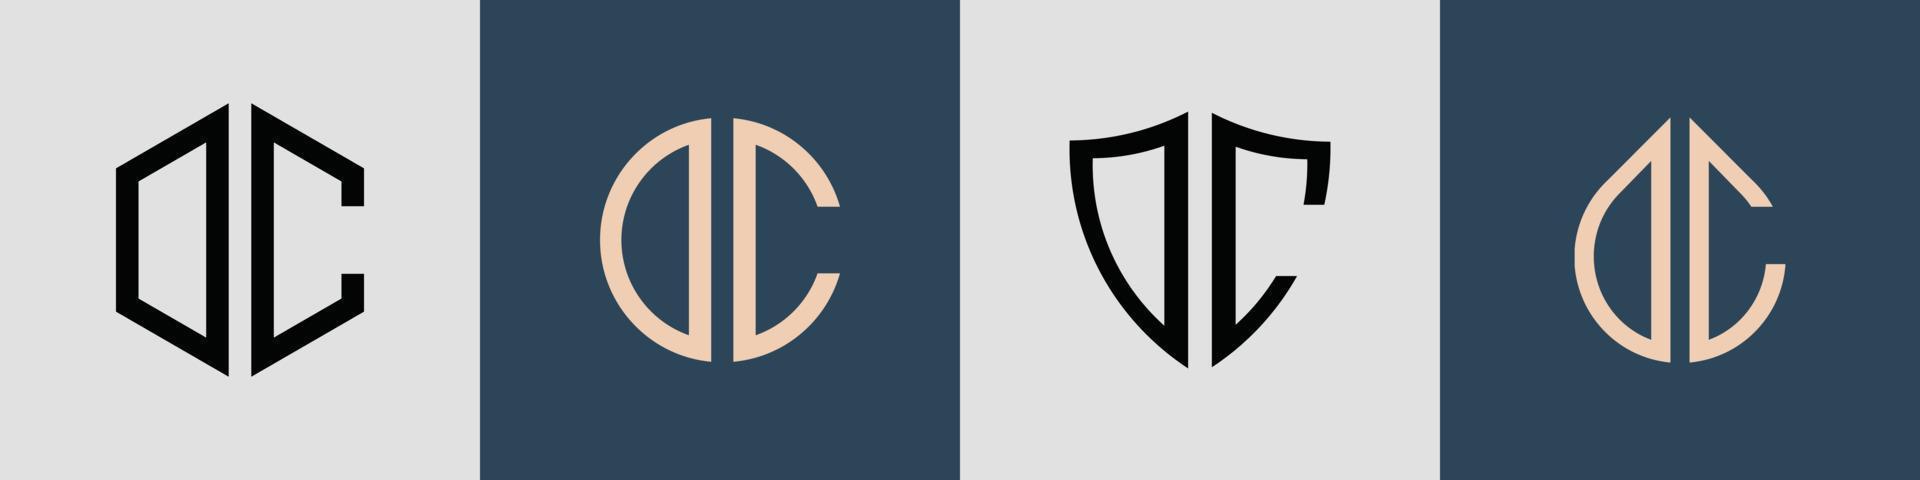 pacchetto creativo semplice di lettere iniziali dc logo design. vettore